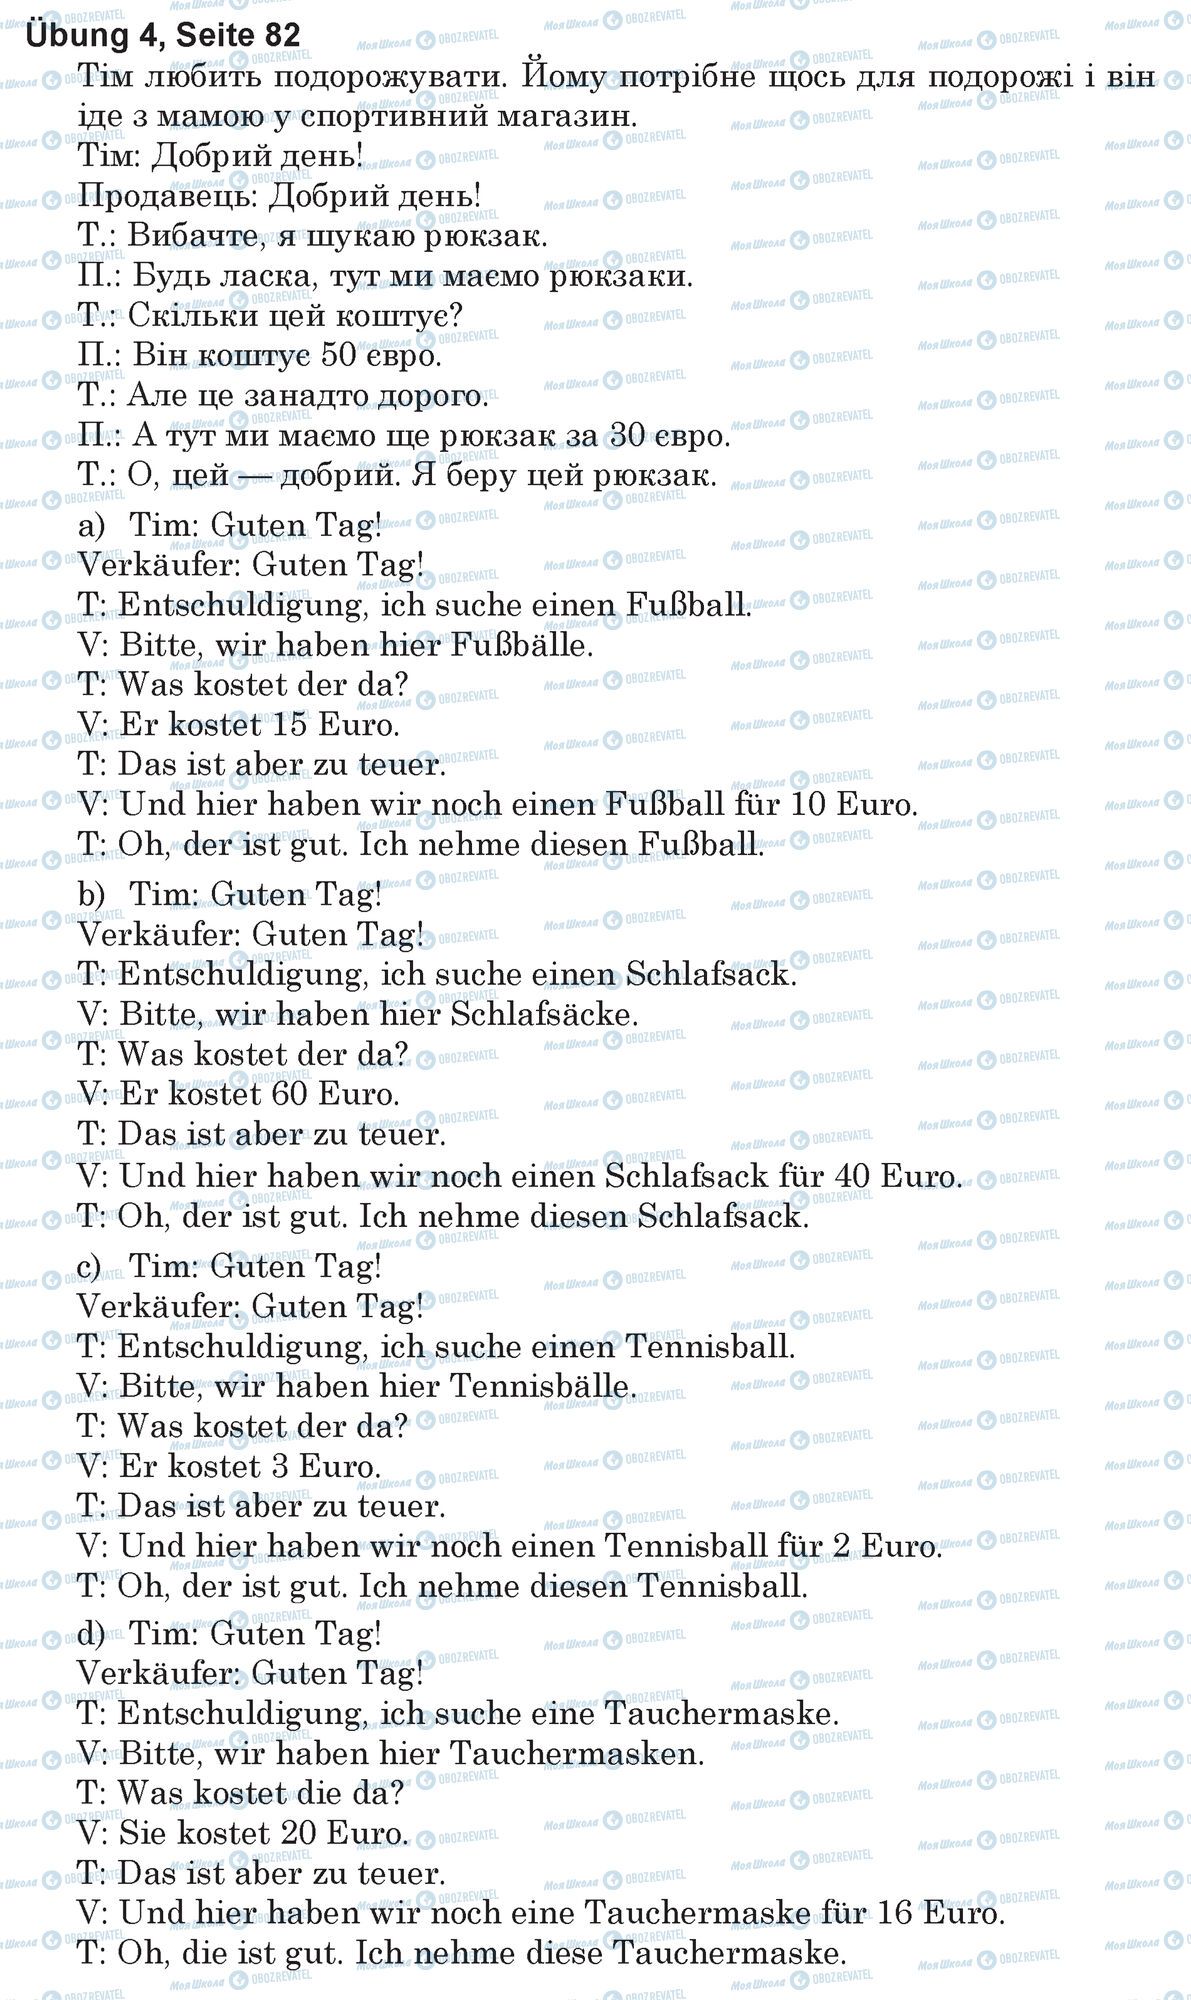 ГДЗ Немецкий язык 5 класс страница Ubung 4, Seite 82